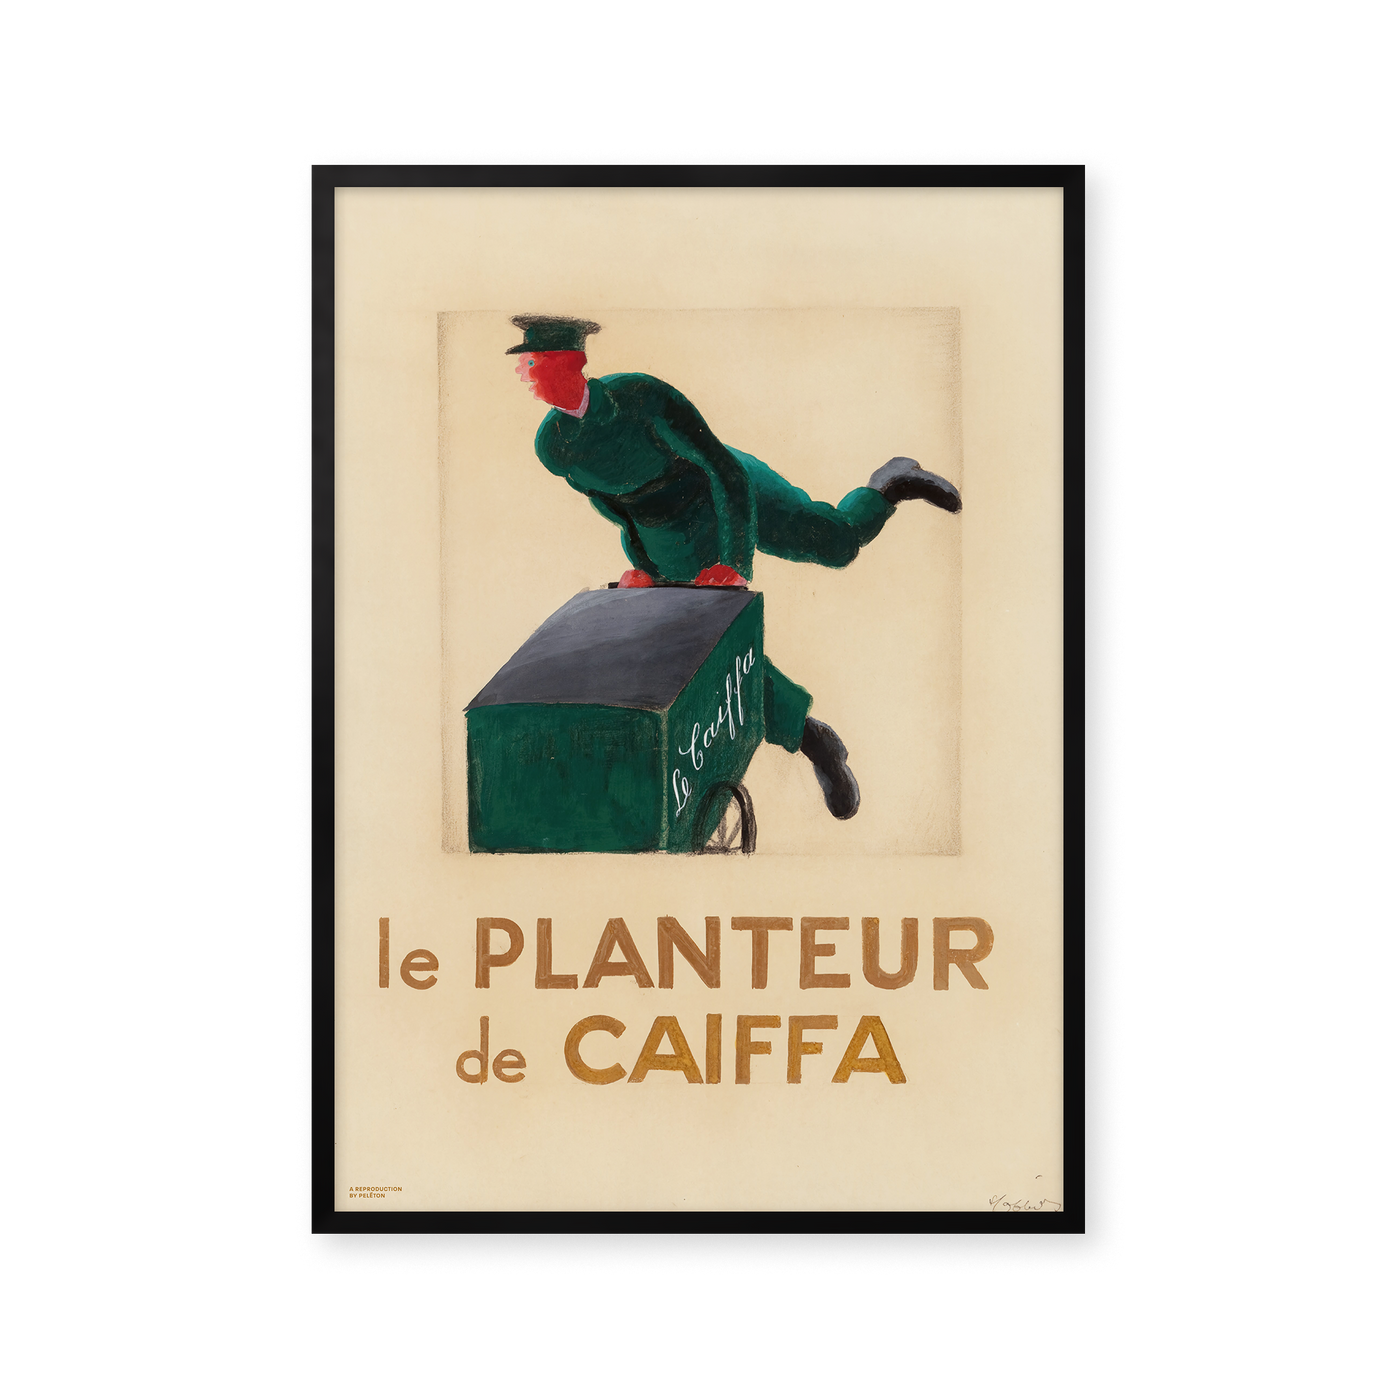 Le Planteur de Caiffa